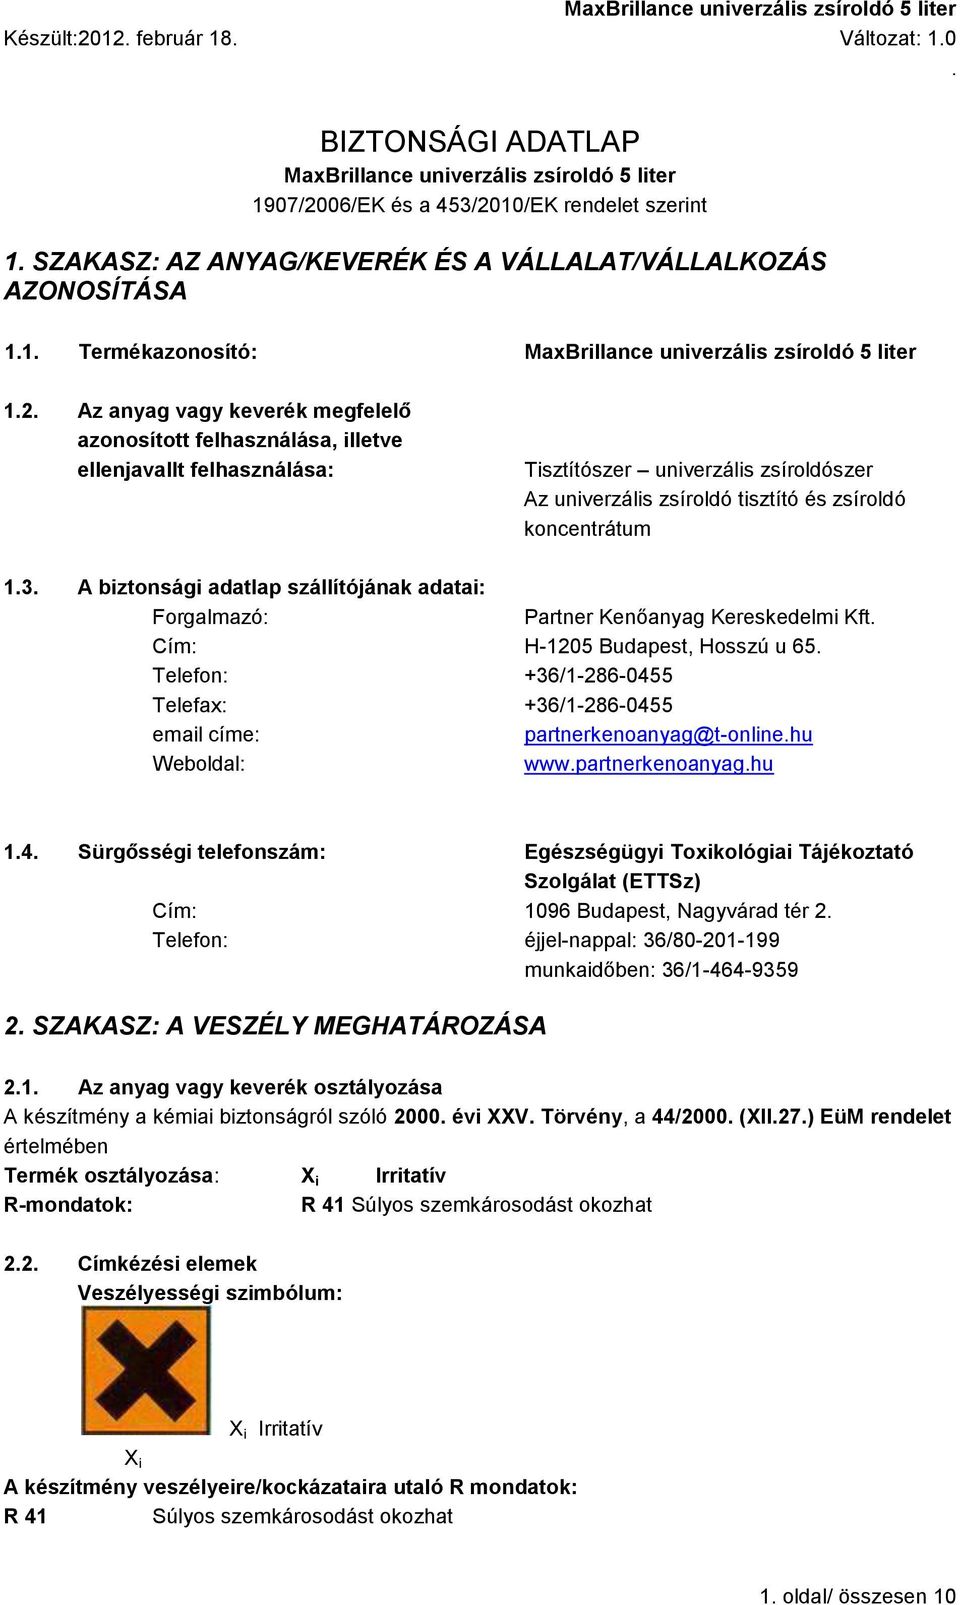 zsíroldószer Az univerzális zsíroldó tisztító és zsíroldó koncentrátum 13 A biztonsági adatlap szállítójának adatai: Forgalmazó: Partner Kenőanyag Kereskedelmi Kft Cím: H-1205 Budapest, Hosszú u 65